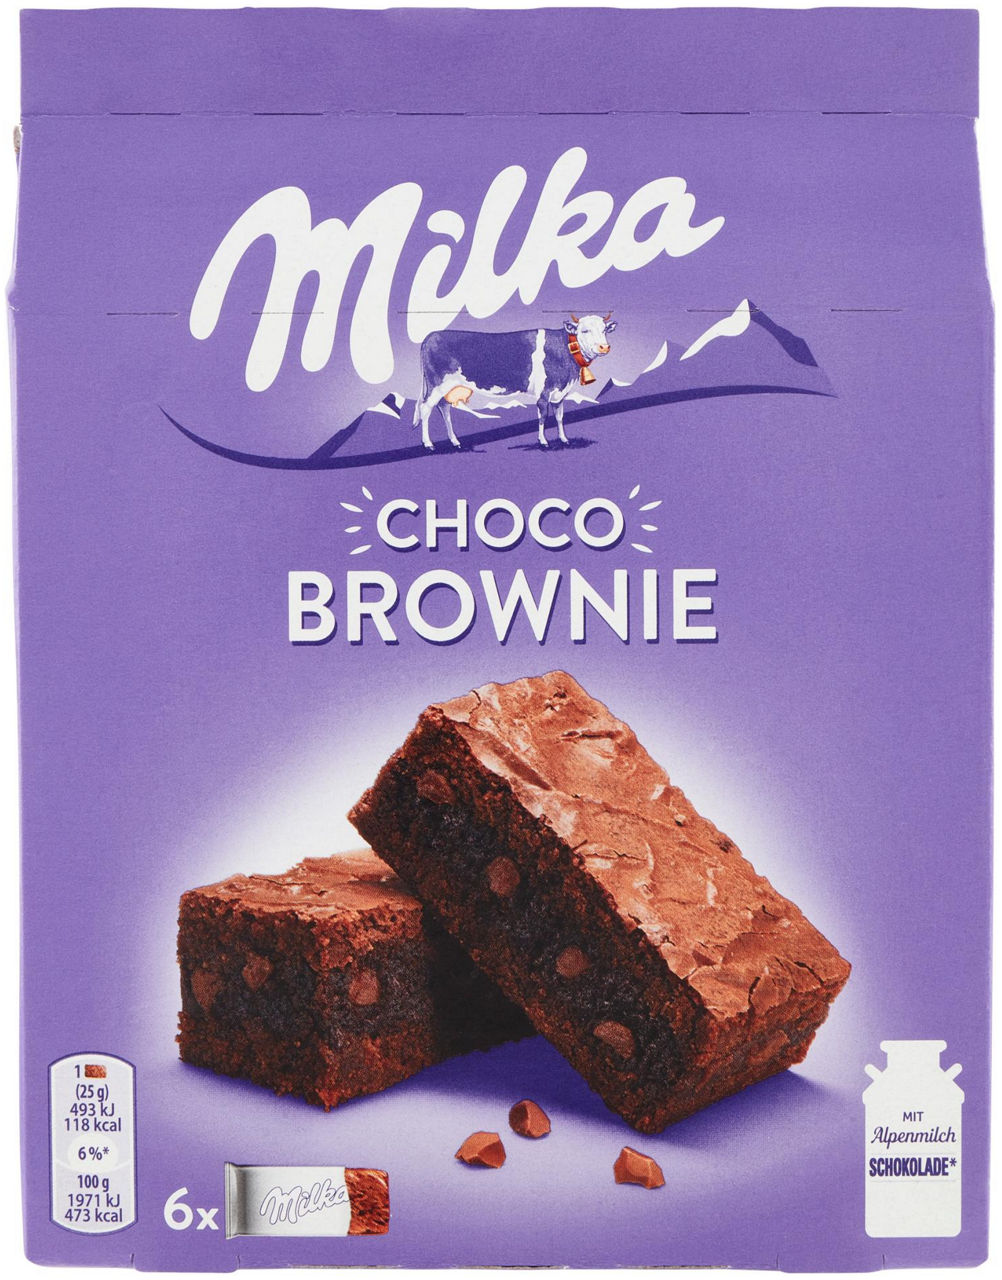 Choco Brownie, merendina al cioccolato al latte - 6x25g - 0